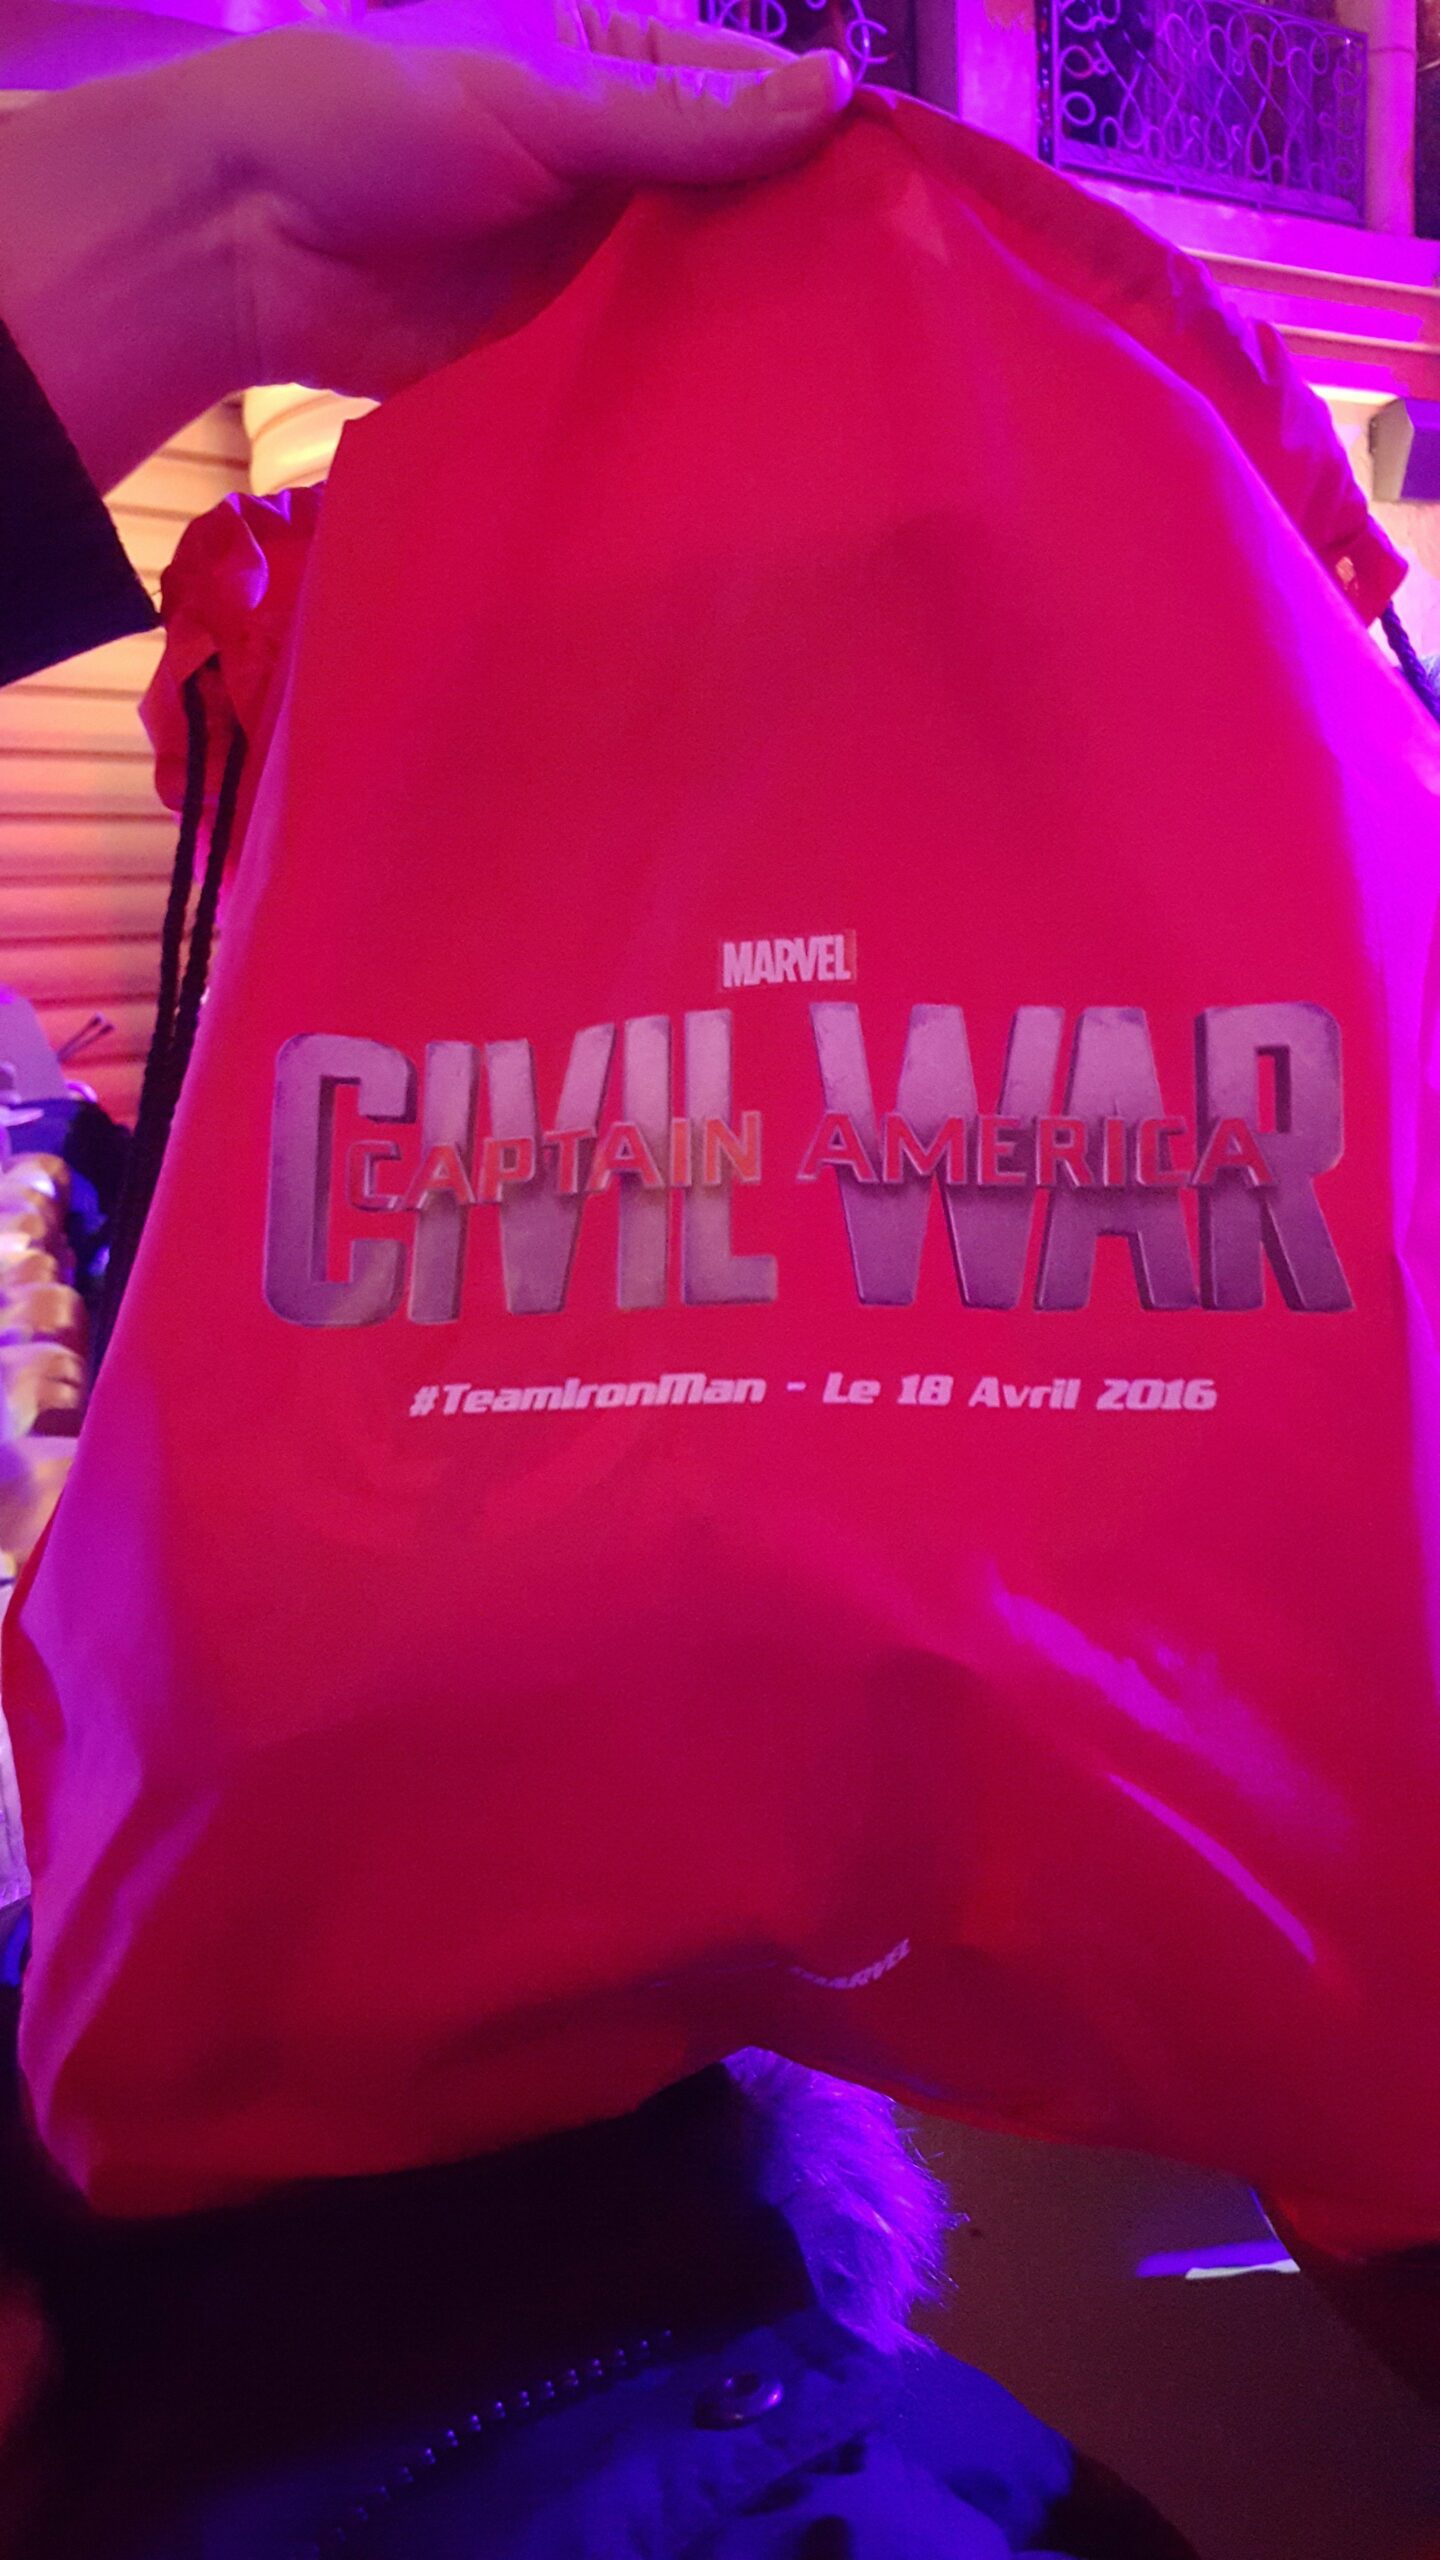 Photo du sac Iron Man offert à l'avant-première française au Grand REX de Captain America: Civil War